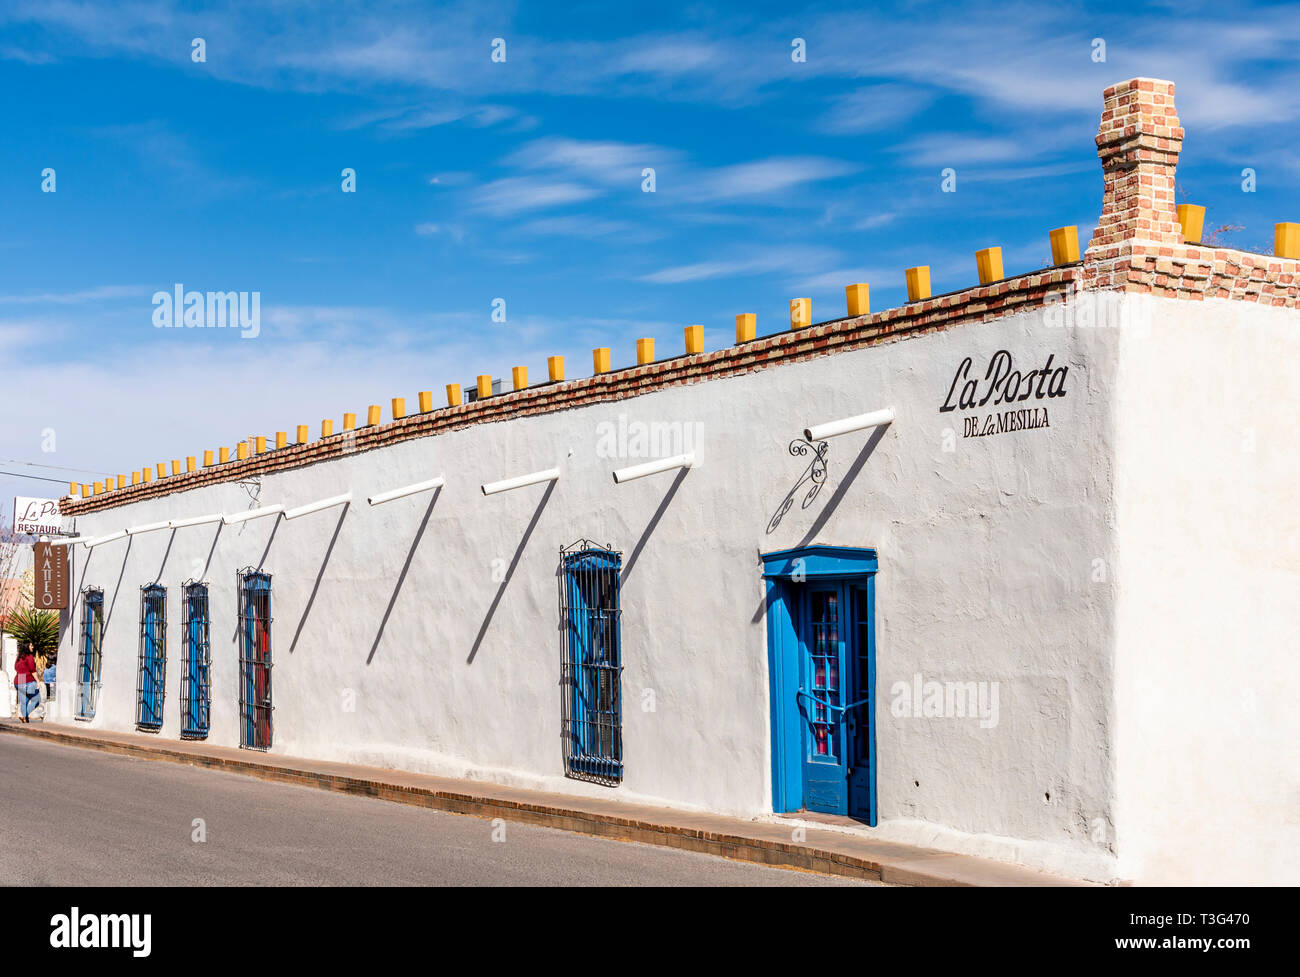 La Posta de Mesilla restaurant situé dans un style des années 1840 adobe hacienda et diligences Butterfield Stage Line pour le dans le Nouveau Mexique. Banque D'Images